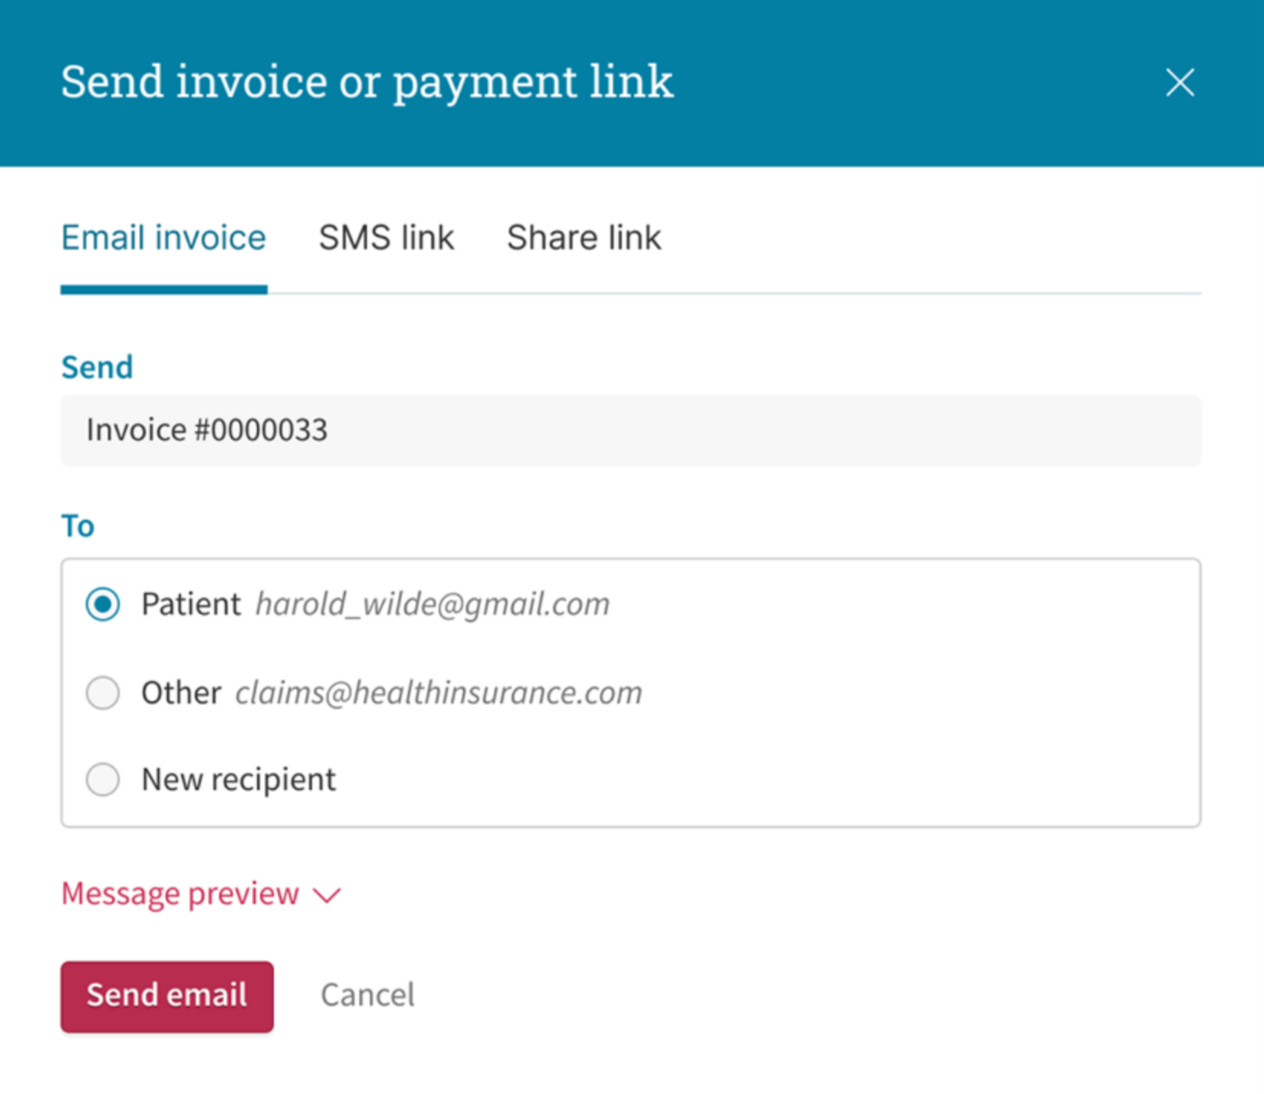 A screenshot of an online payment form.